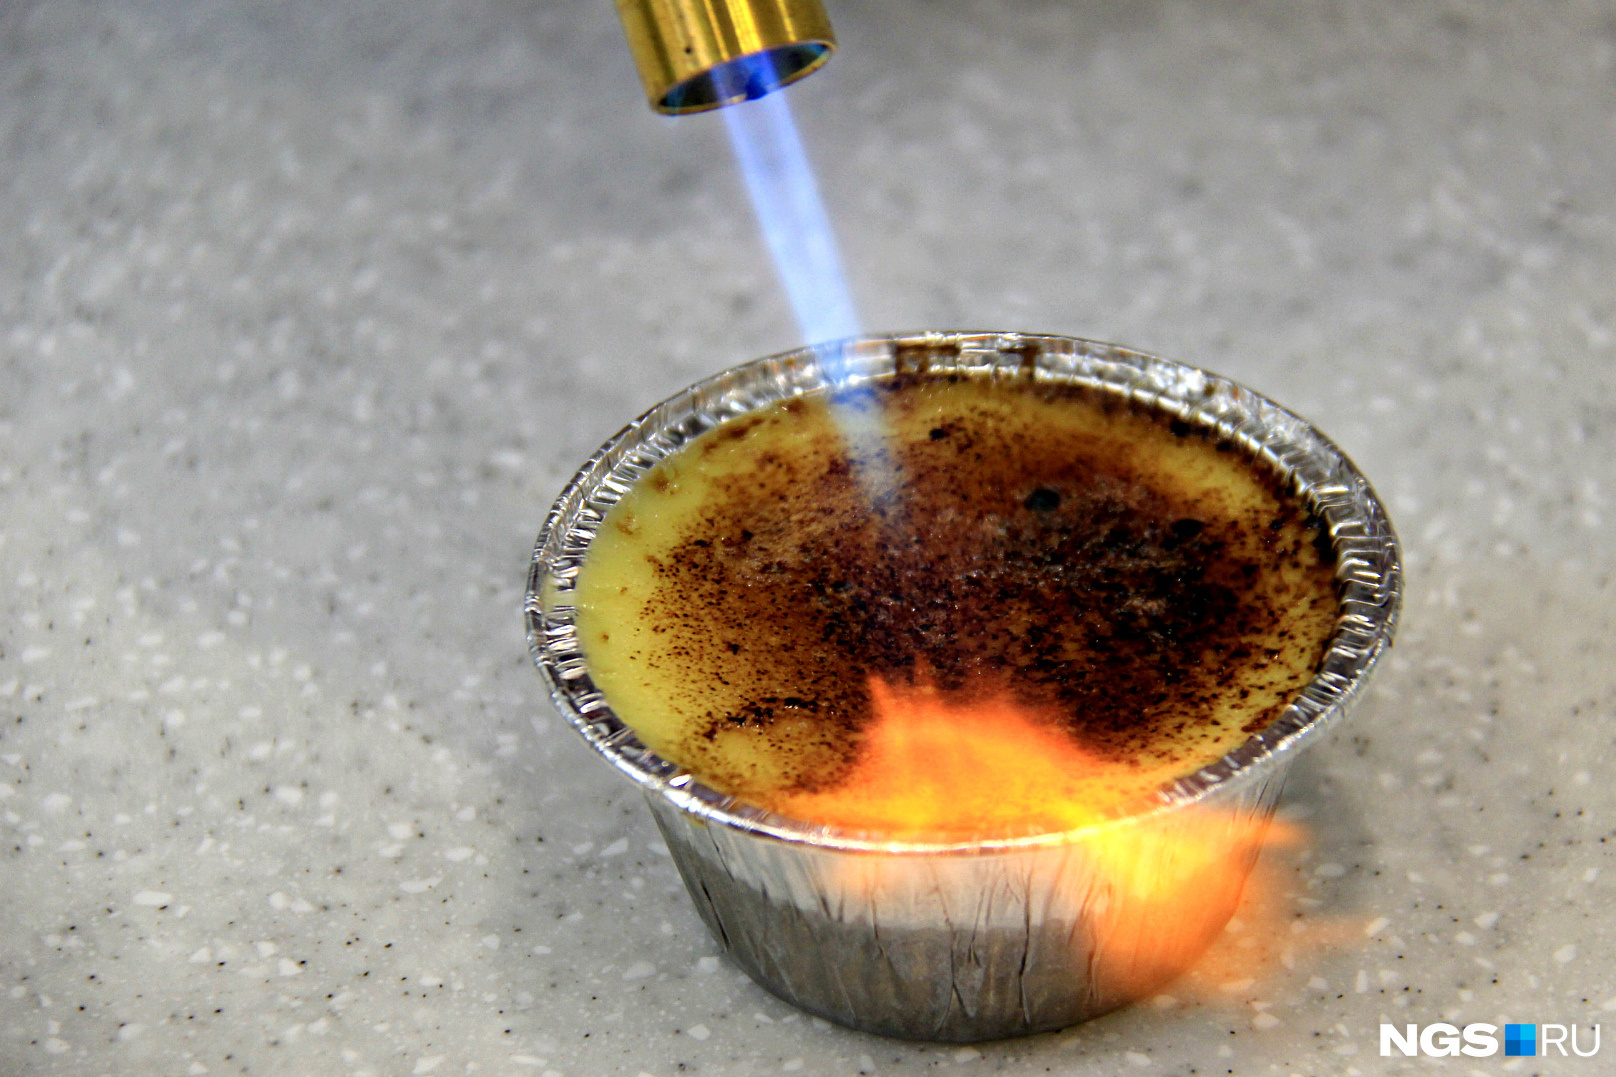 Процесс приготовления крем-брюле с помощью газовой горелки